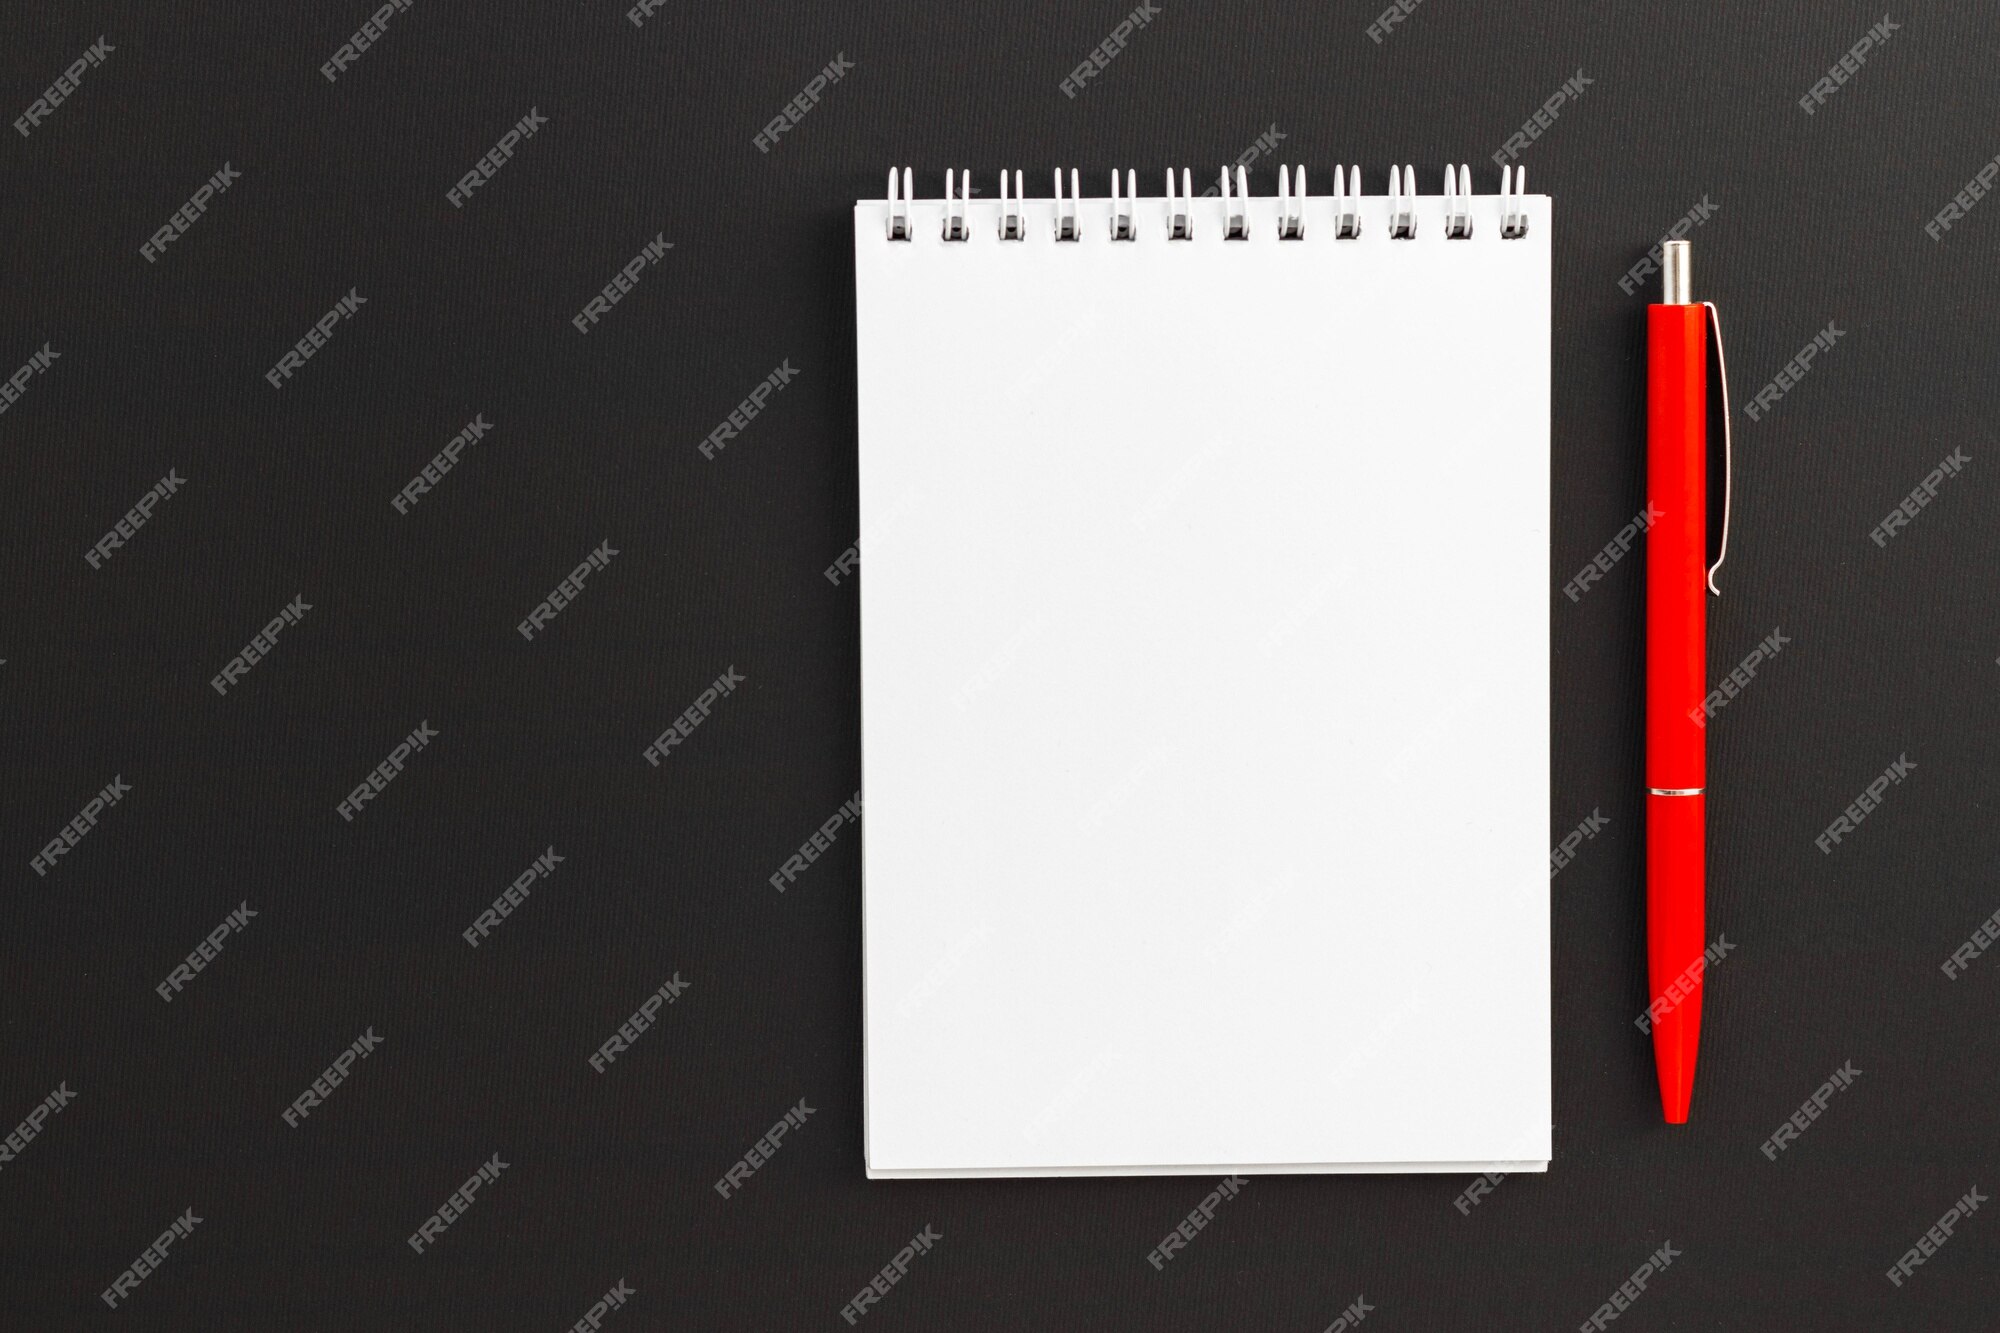 Bút đỏ: Bút đỏ luôn là lựa chọn hàng đầu khi bạn muốn tô điểm và nhấn mạnh vào những điểm quan trọng trong văn bản. Những cú viết vụng về hay sai sót chính tả sẽ không thể trốn được mắt nhọn của chiếc bút đỏ.